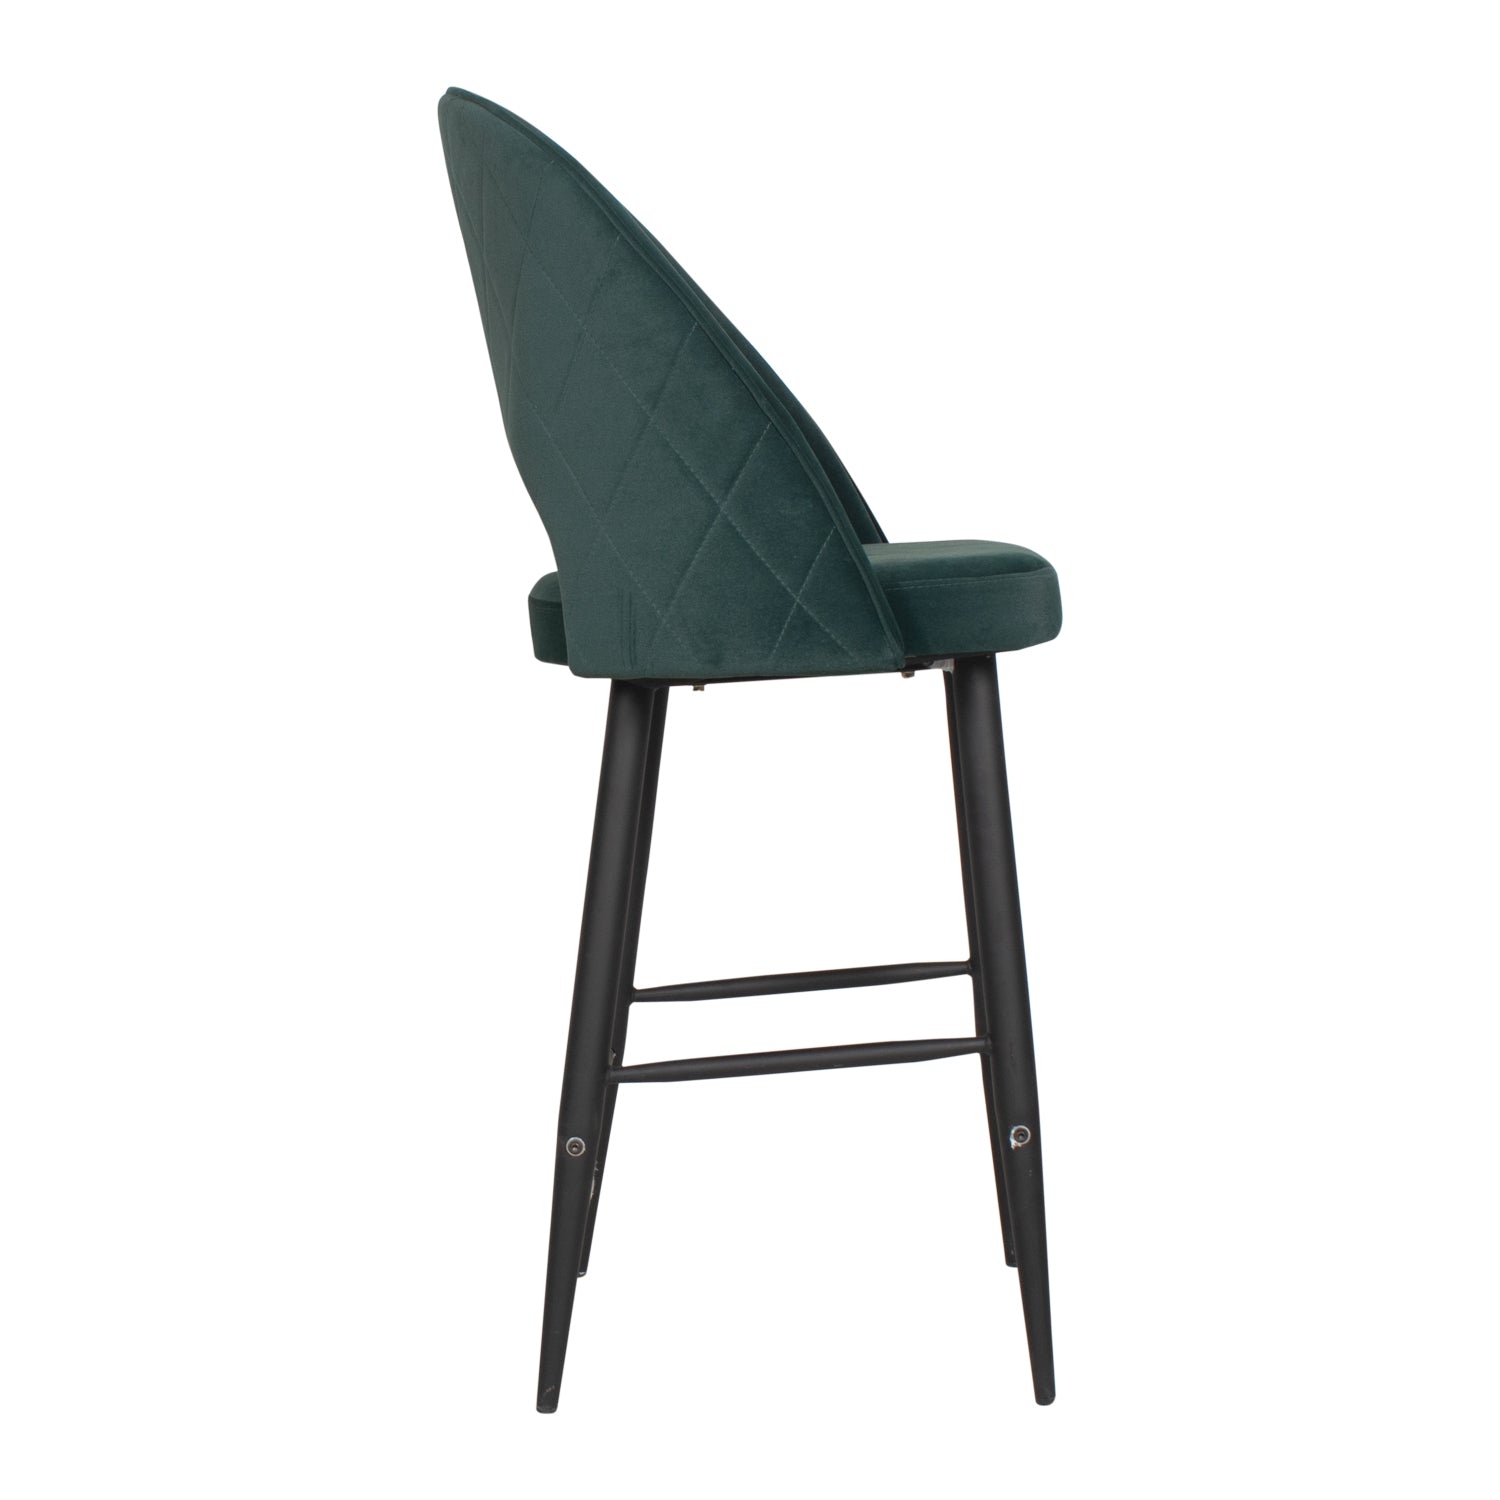 Leol Bar Chair In Premium Green Velvet Fabric